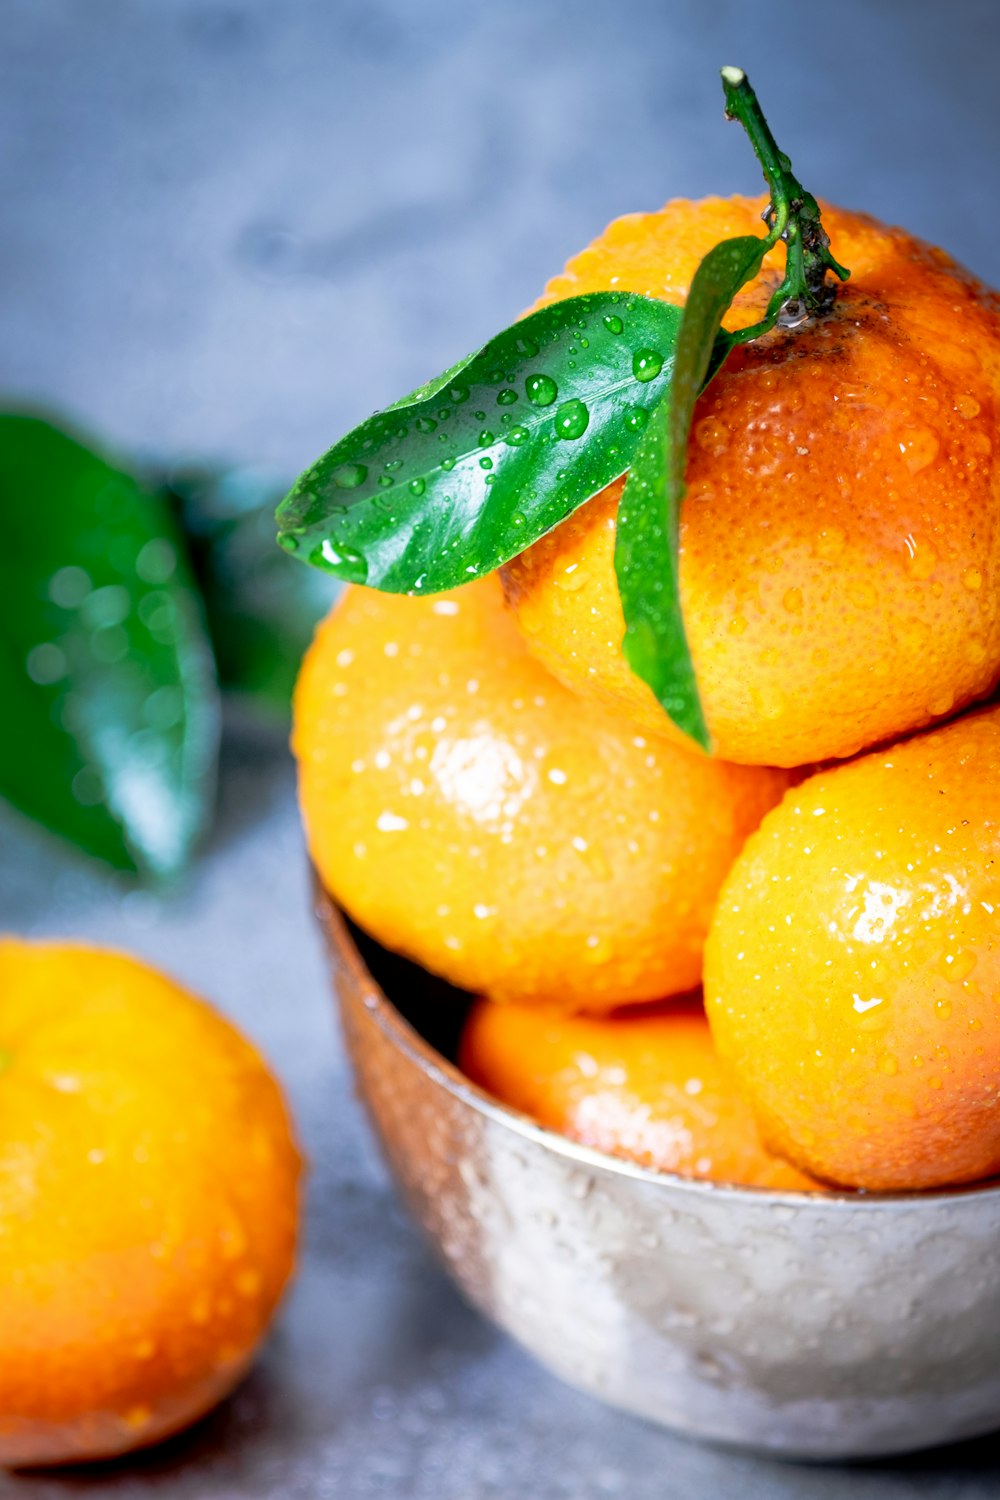 Orangenfrüchte im grauen Stahleimer